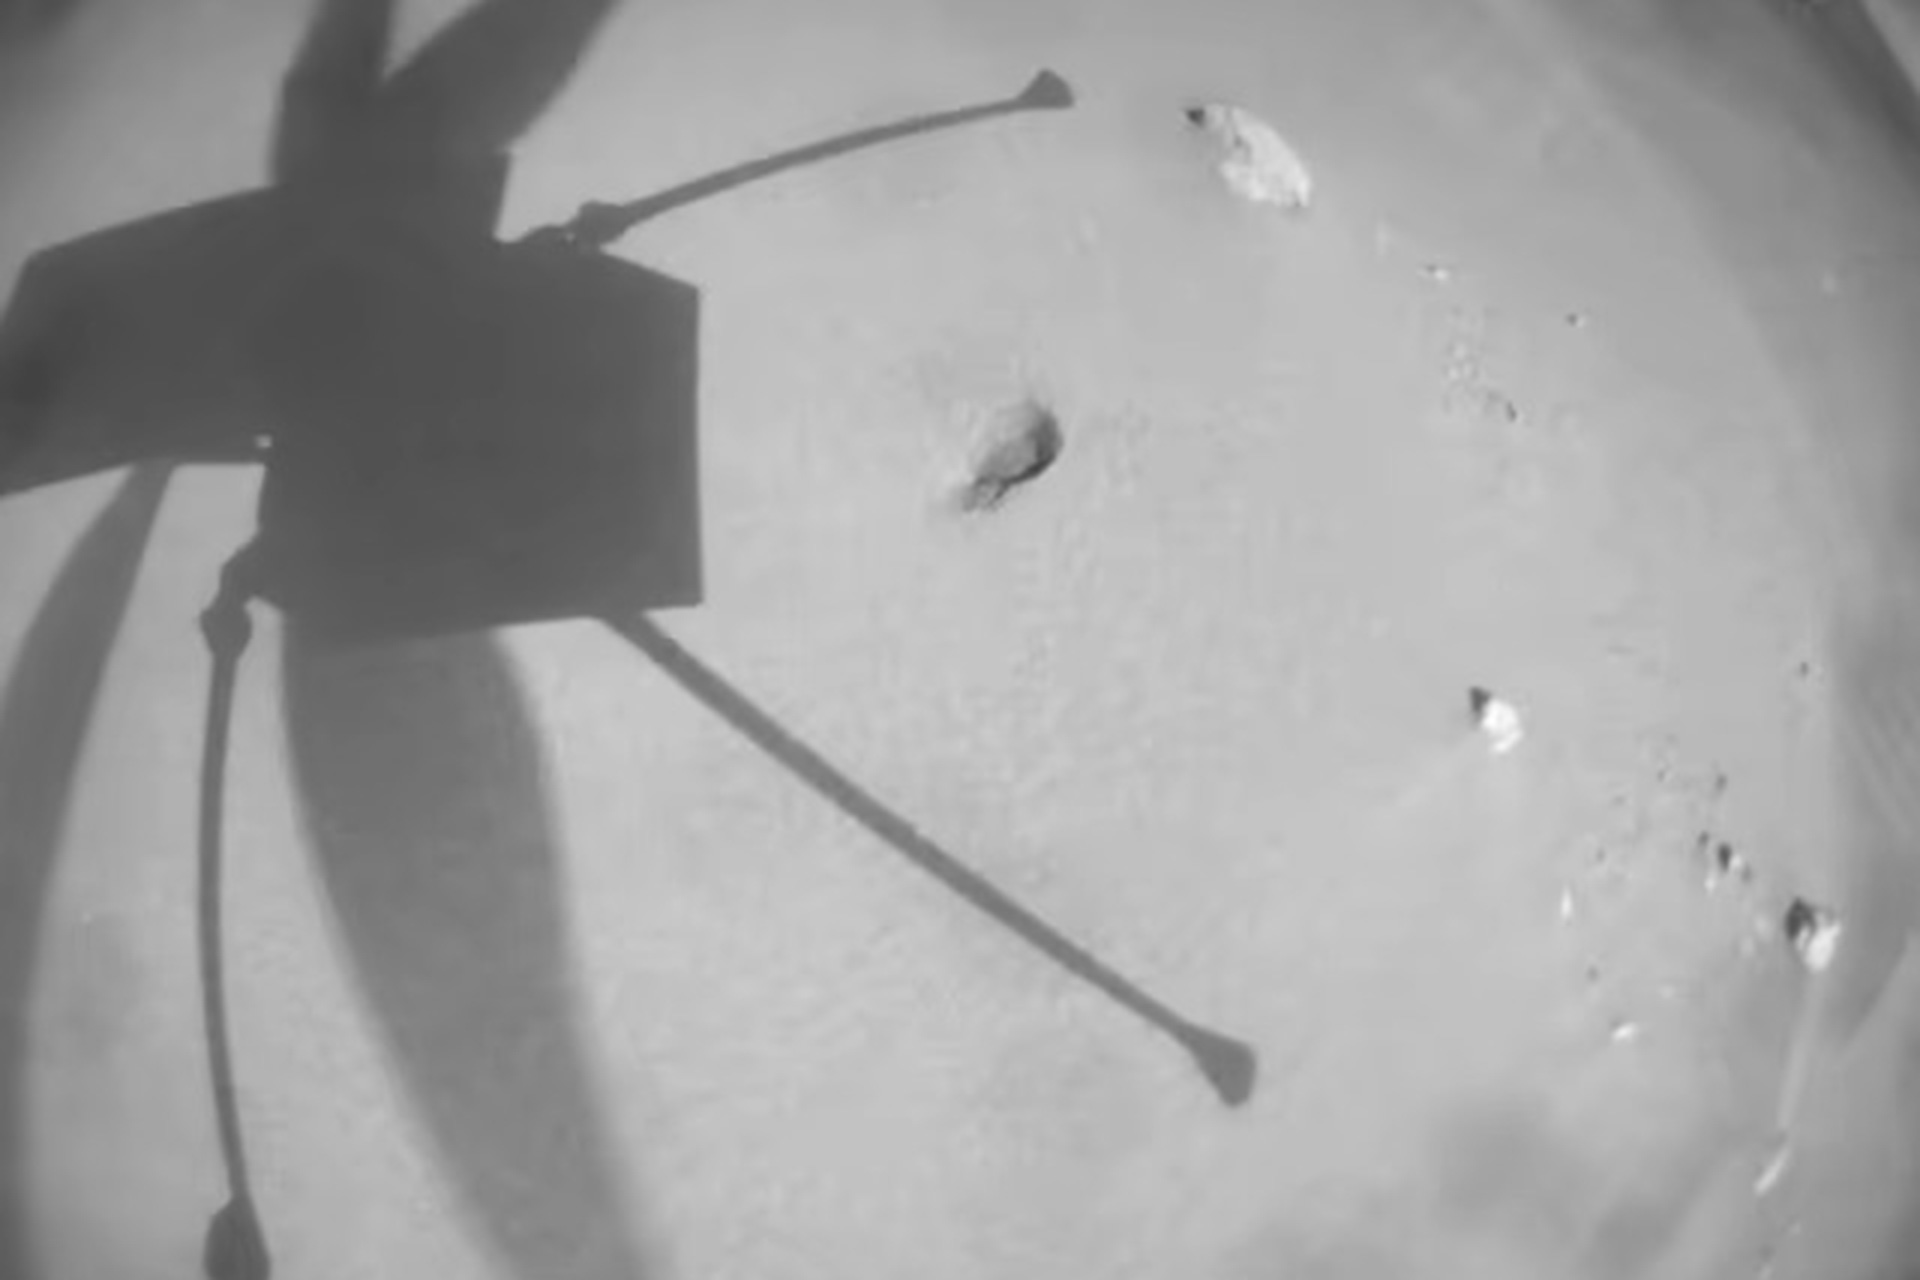 شاهد مروحية المريخ التابعة لناسا وهي تقوم برحلة حطمت الرقم القياسي